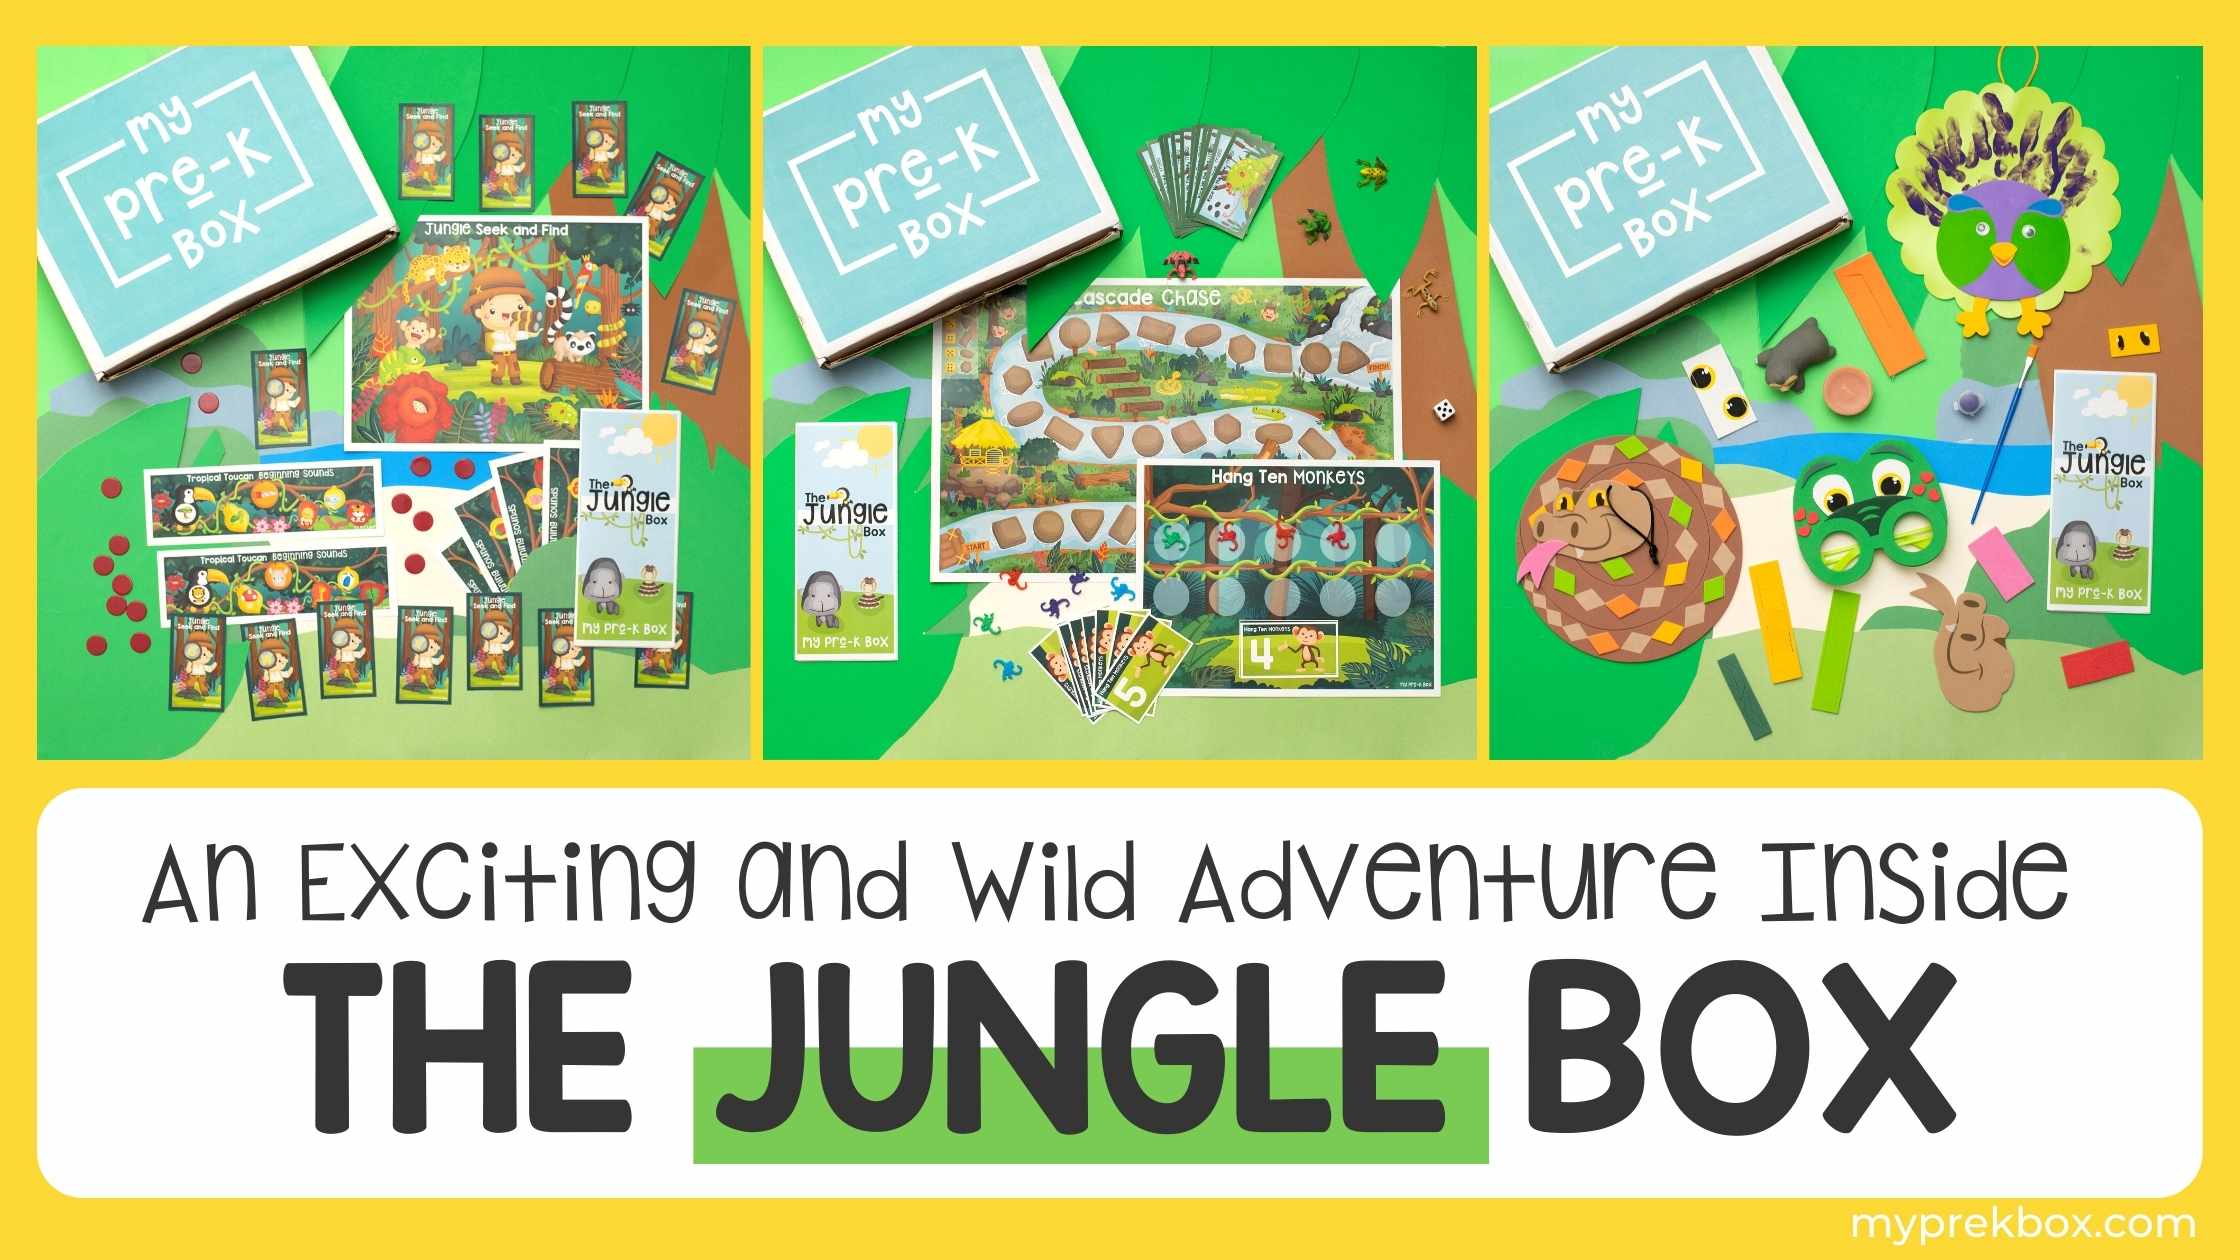 The Jungle Box